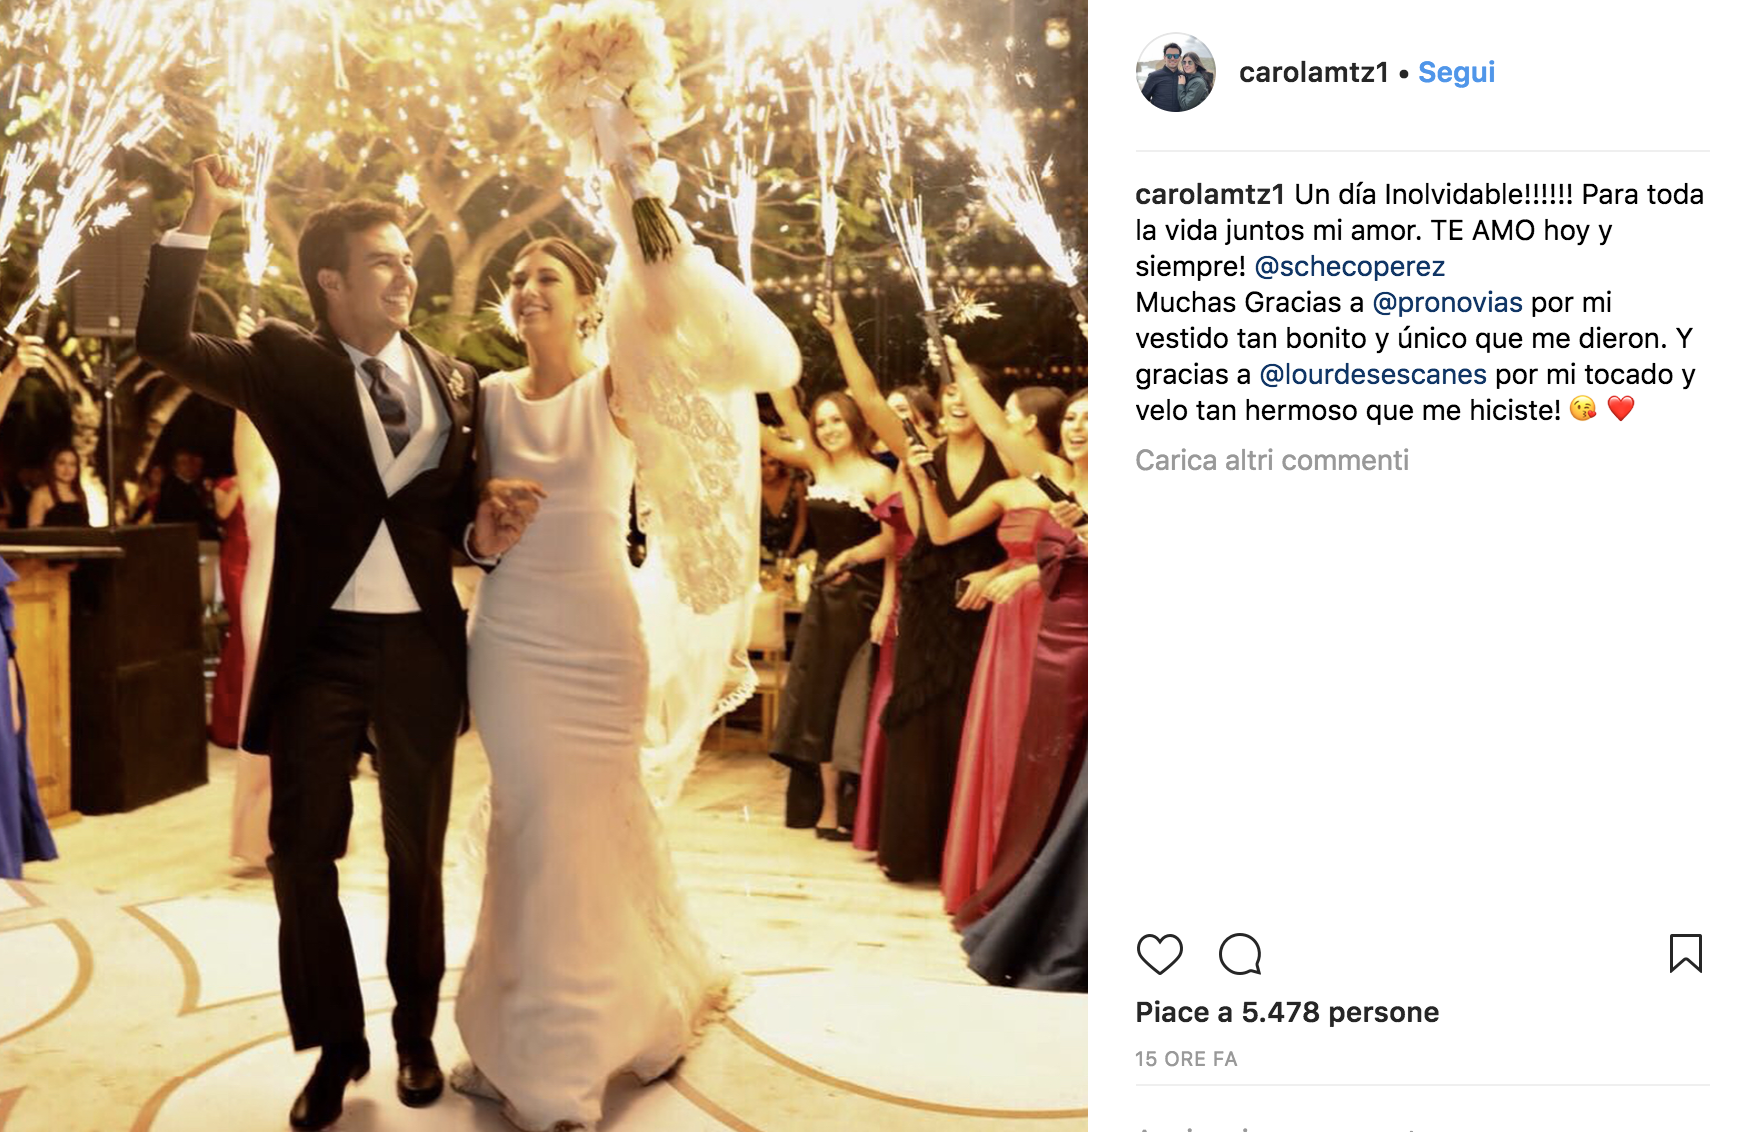 F1 - Sergio Perez si sposa: il pilota a nozze con Carola Martinez GALLERY